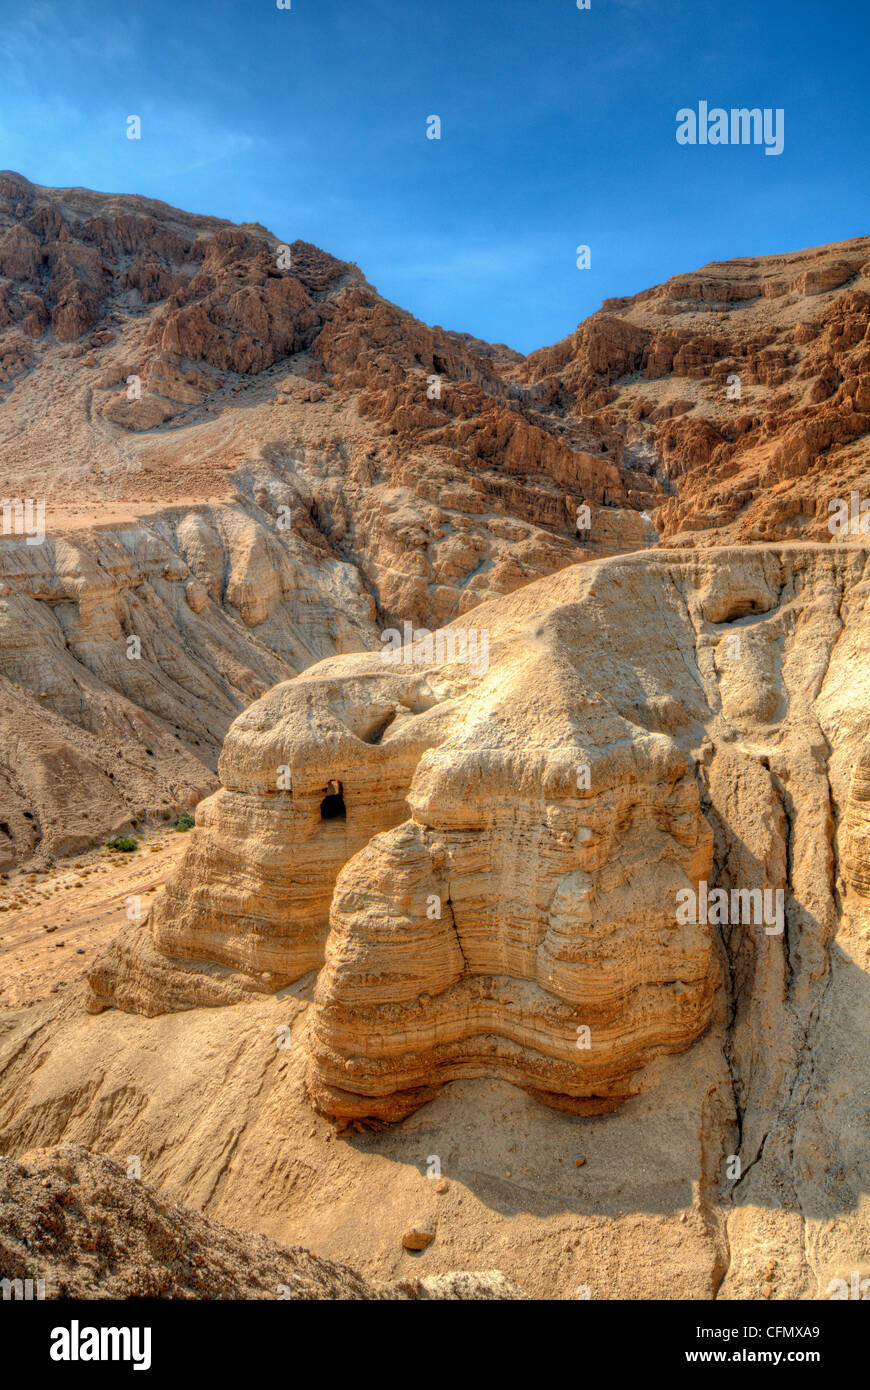 La grotte 4 de Qumrân, site de la découverte des manuscrits de la Mer Morte à Qumran, près de la Mer Morte Israël.. Banque D'Images